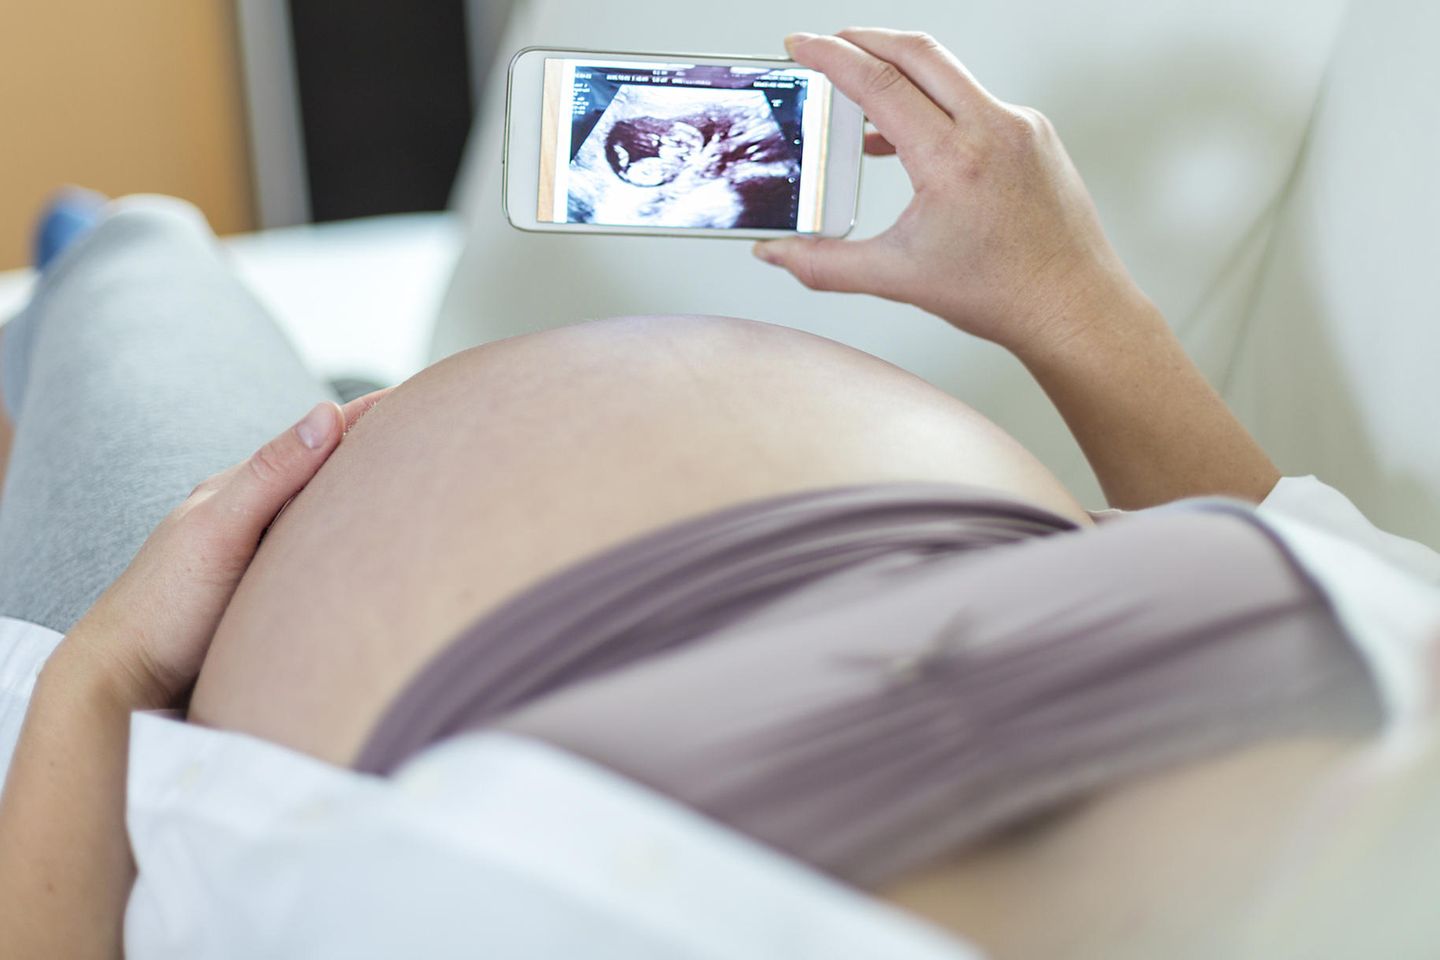 Amerika schockt mit Schwangerschafts-App